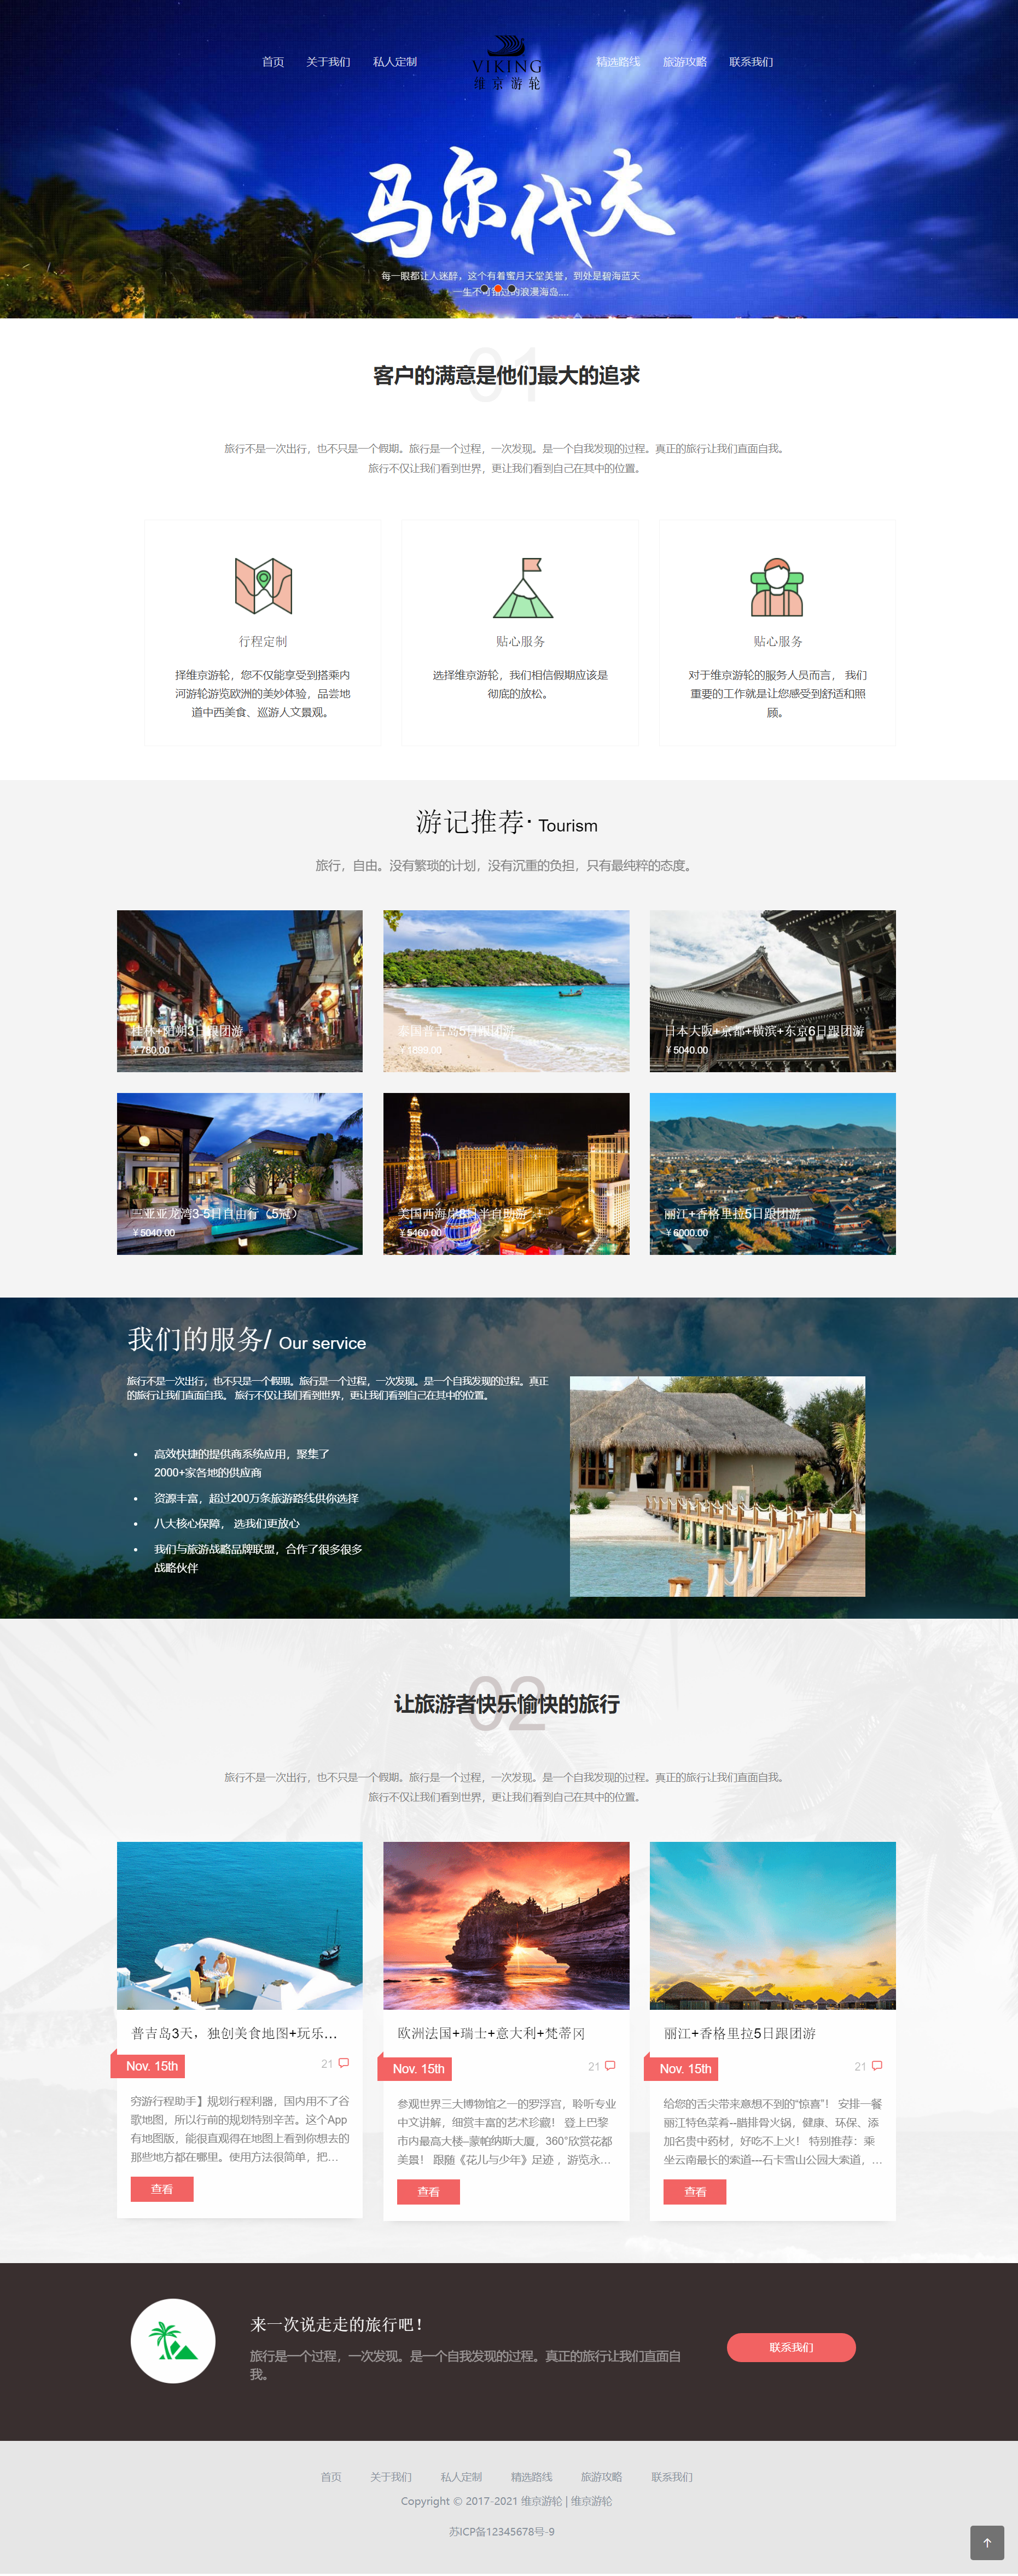 HTML白色简洁形式境外旅游私人企业网站模板代码